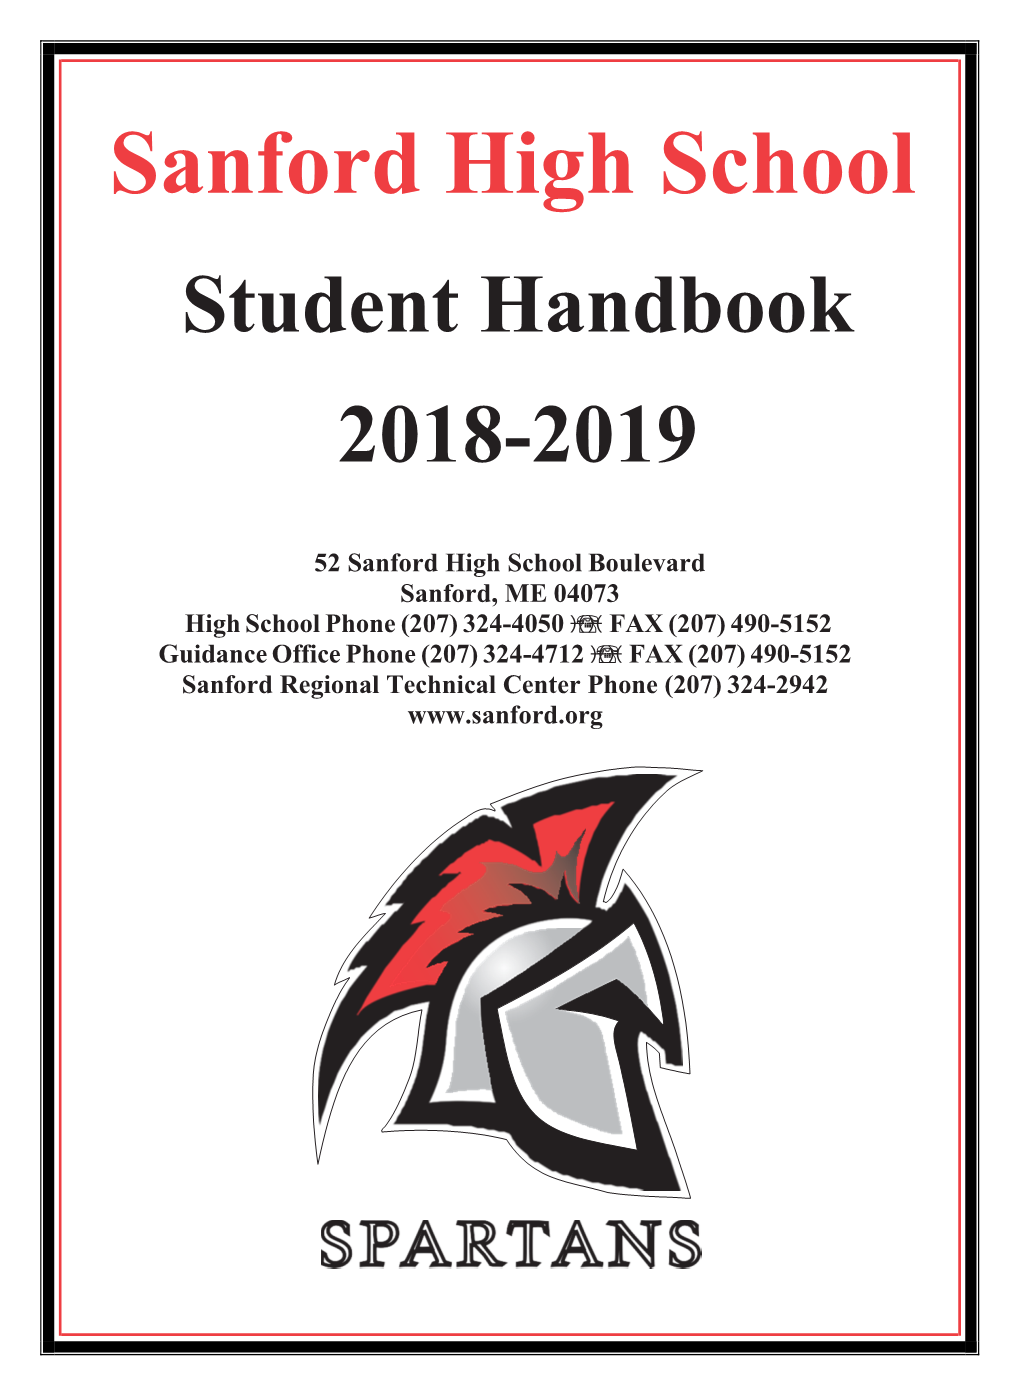 Sanford High School Student Handbook 2018-2019